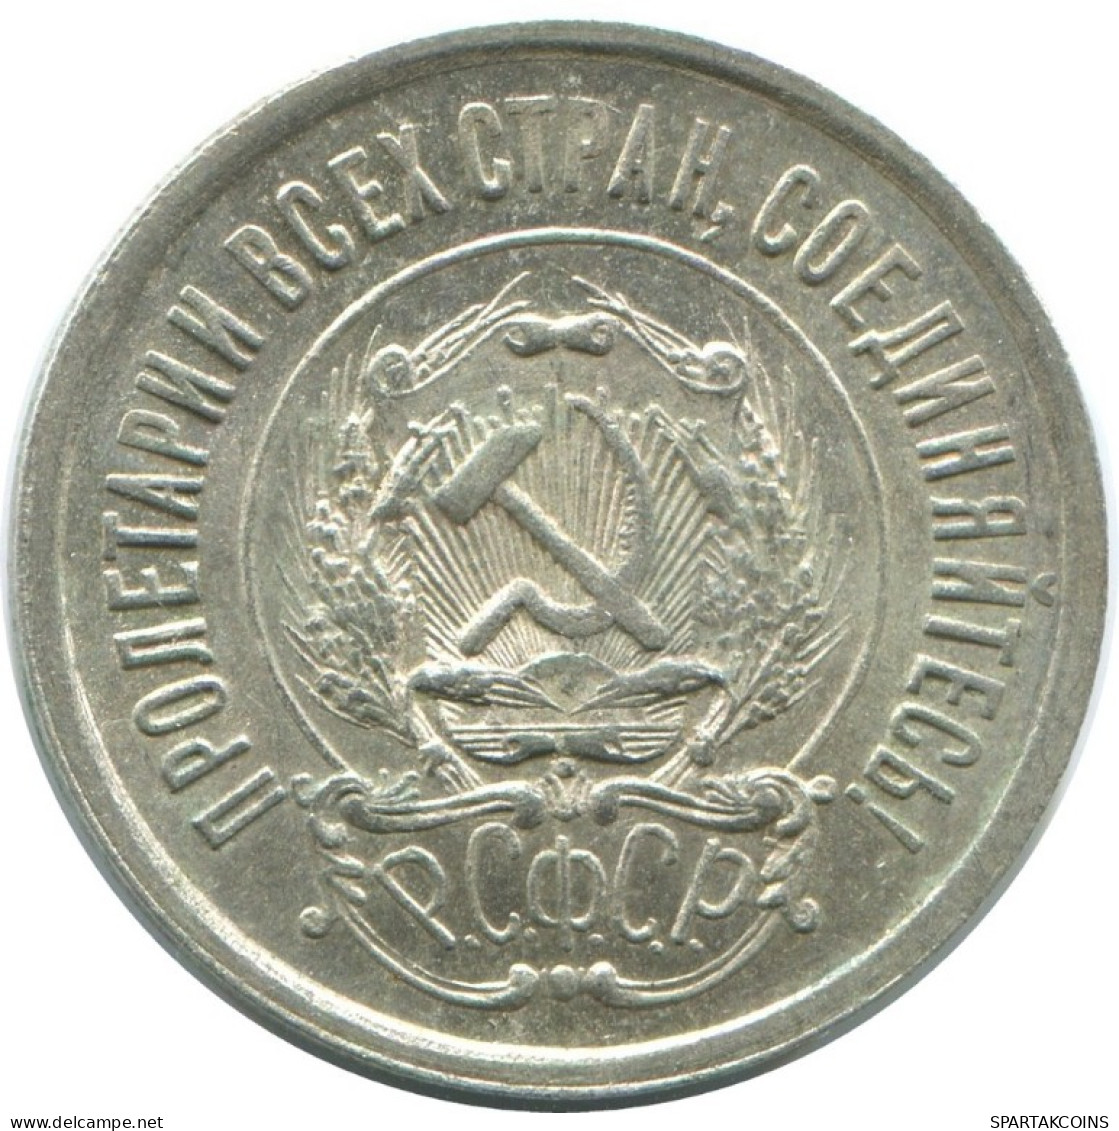 20 KOPEKS 1923 RUSSLAND RUSSIA RSFSR SILBER Münze HIGH GRADE #AF636.D.A - Russia